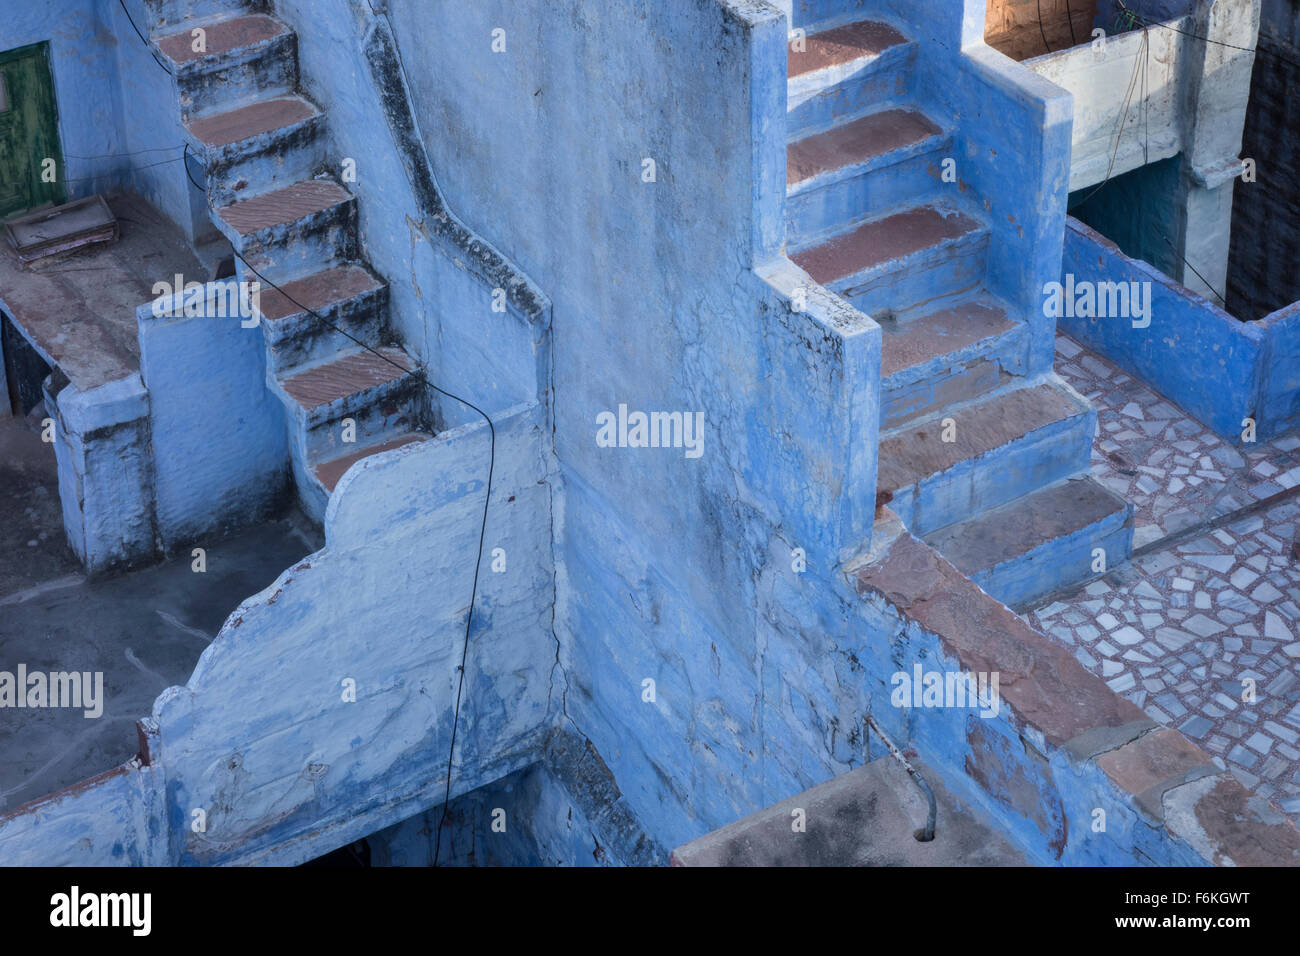 L'escalier bleu dans la ville bleue. Jodhpur, Inde. Banque D'Images